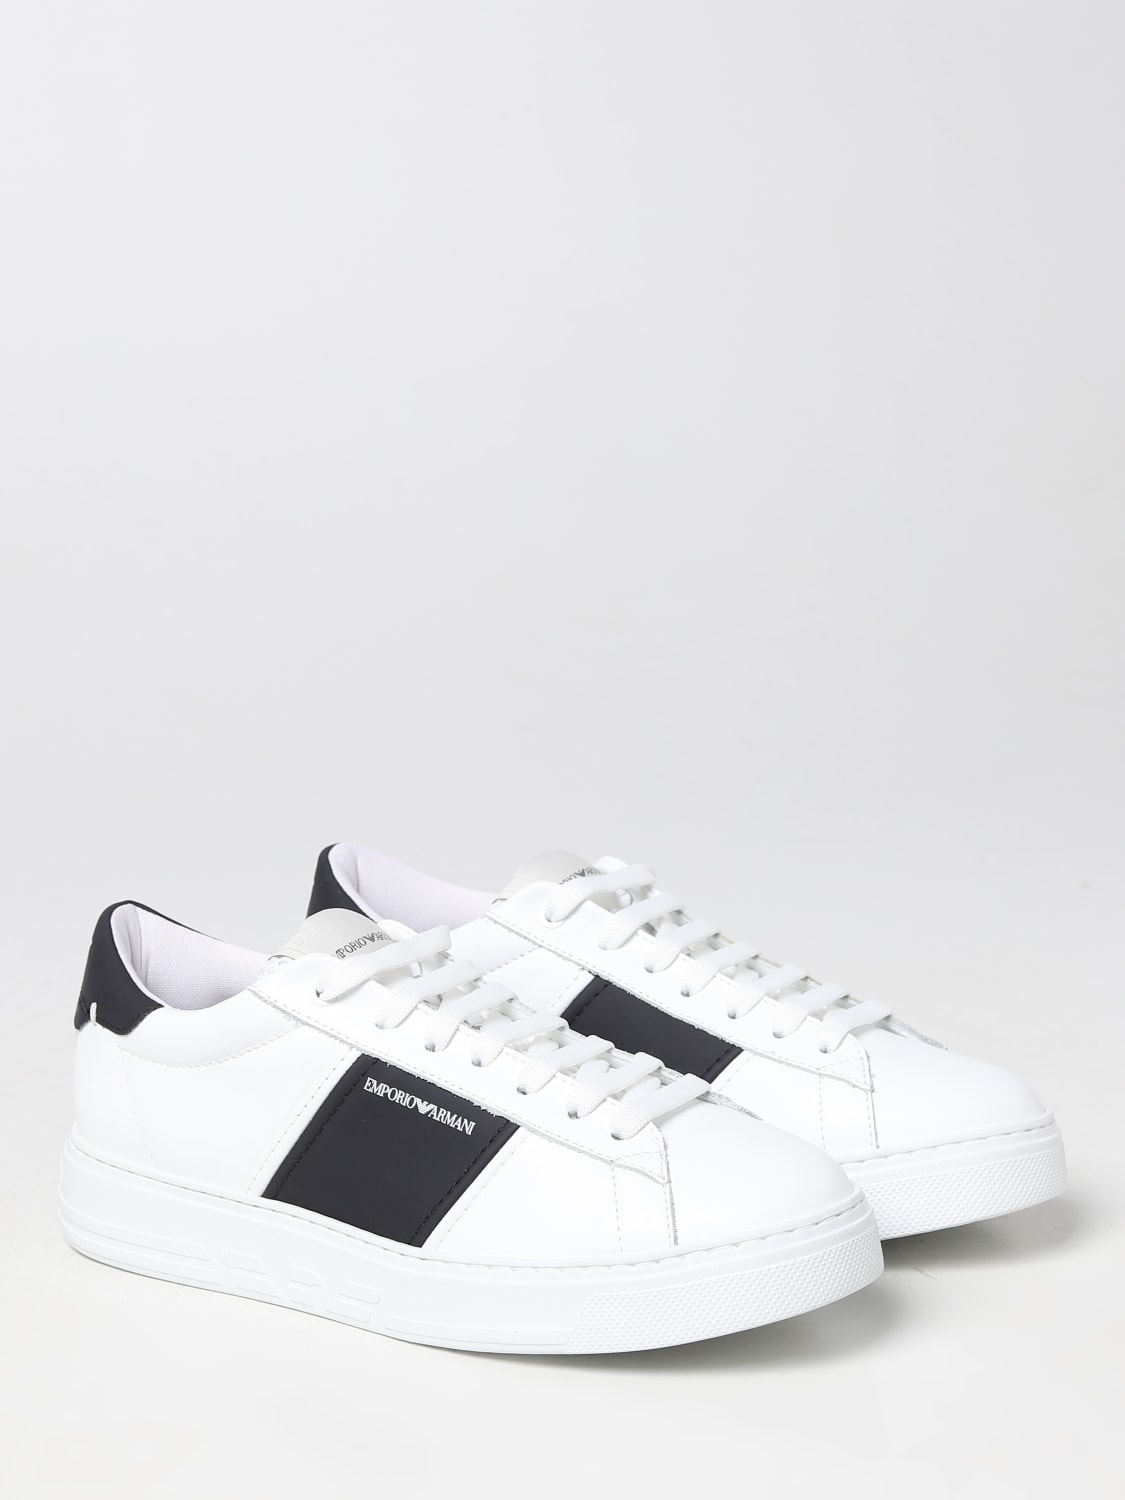 Emporio Armani leather chunky sneakers - White